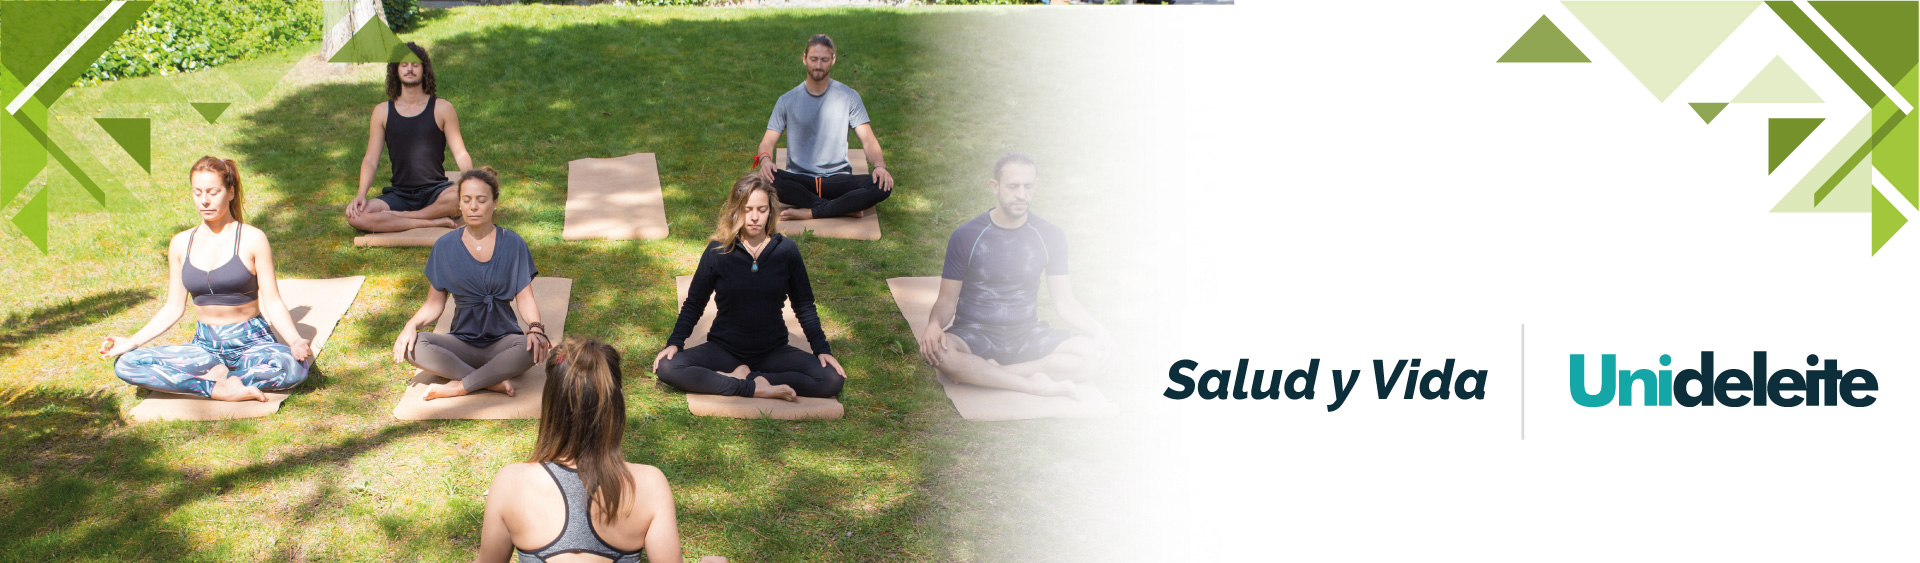 Fotografía de cabecera para la sección Salud y Bienestar de Unideleite la imagen es una plano medio de un grupo de personas realizando yoga